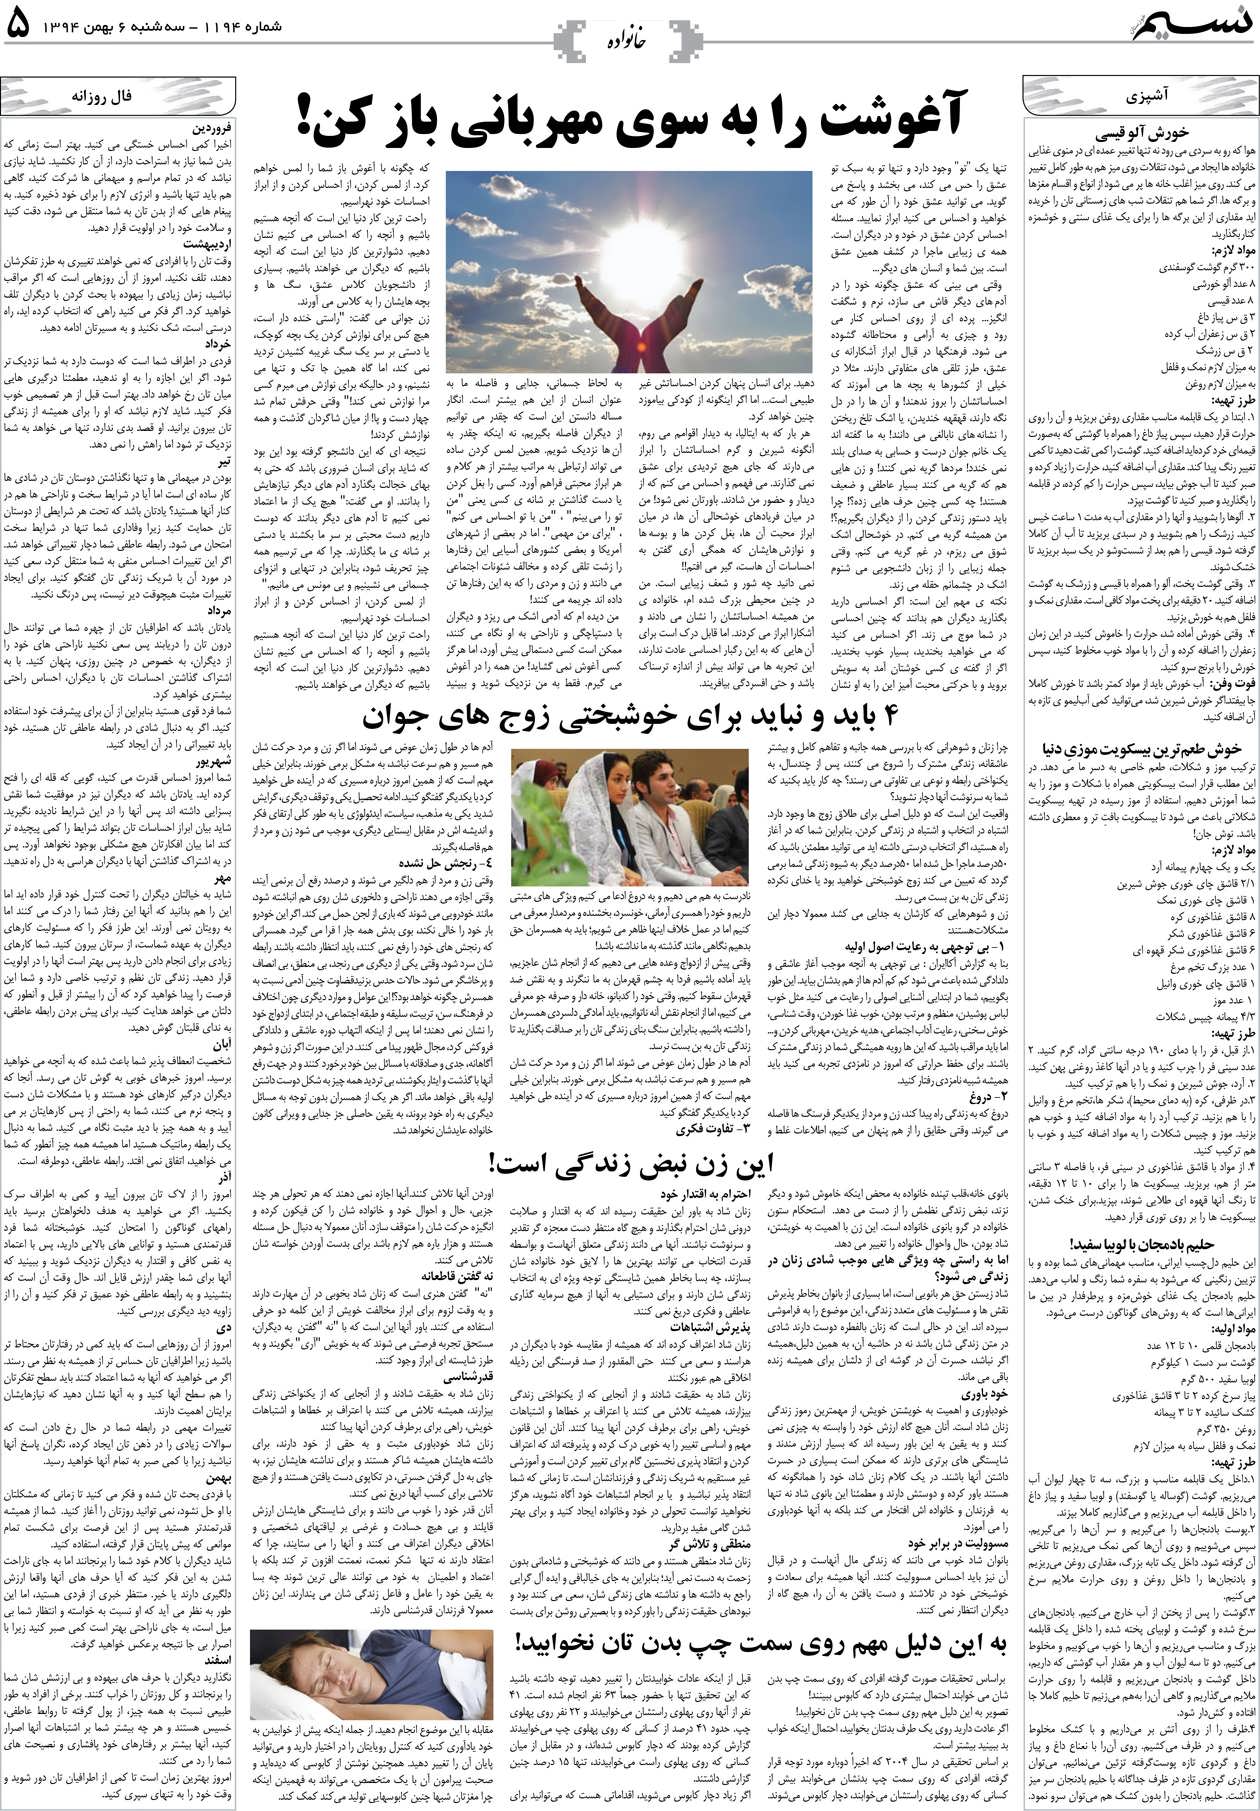 صفحه خانواده روزنامه نسیم شماره 1194